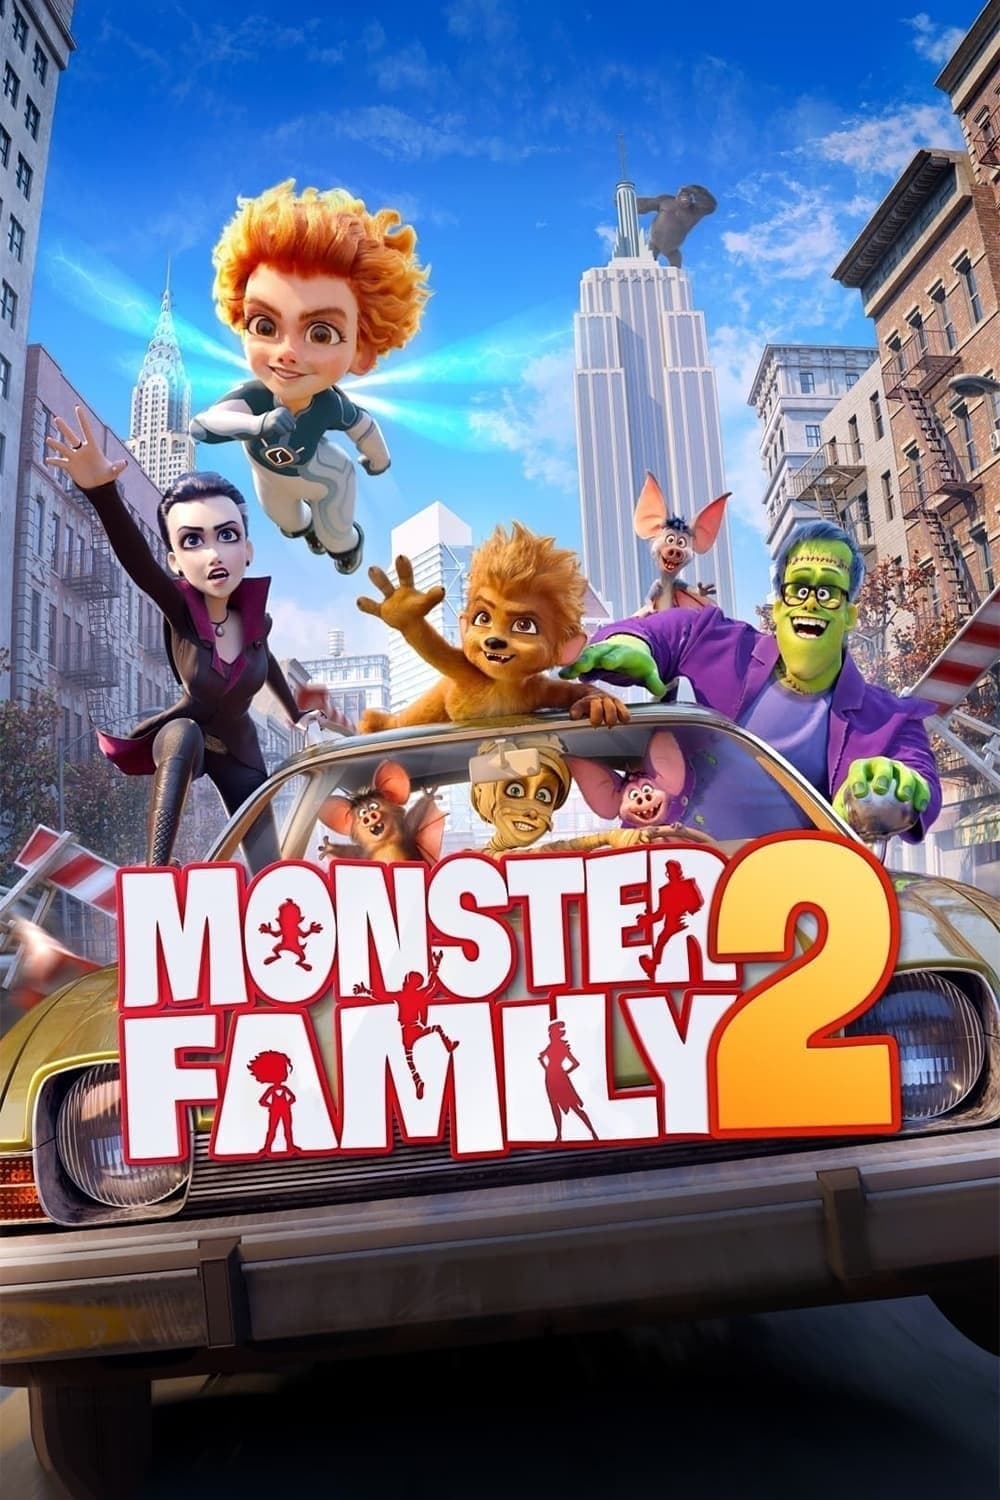 Monster Family 2 film